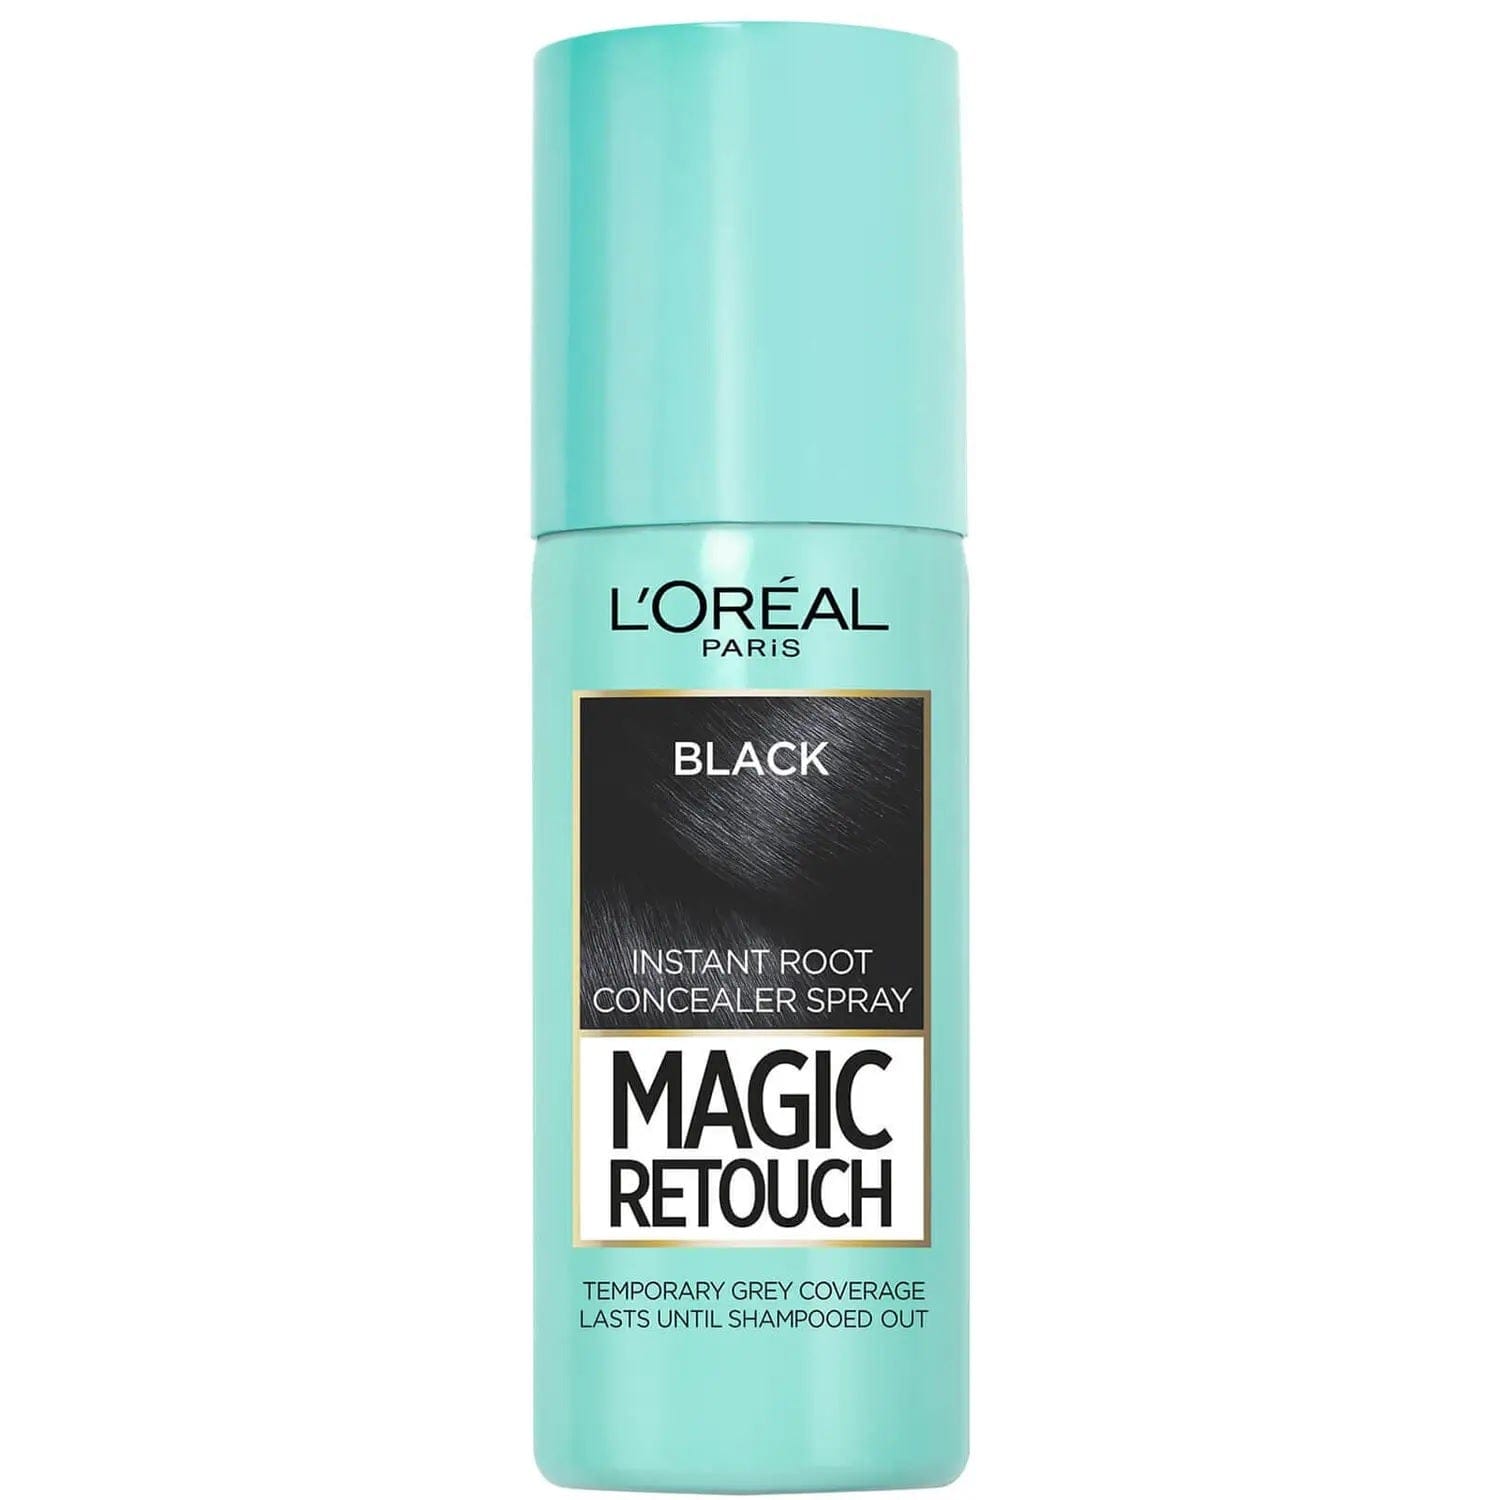 L'Oréal Paris Beauty L'Oreal Paris Magic Retouch Instant Root Concealer Hair Spray Black 75ml